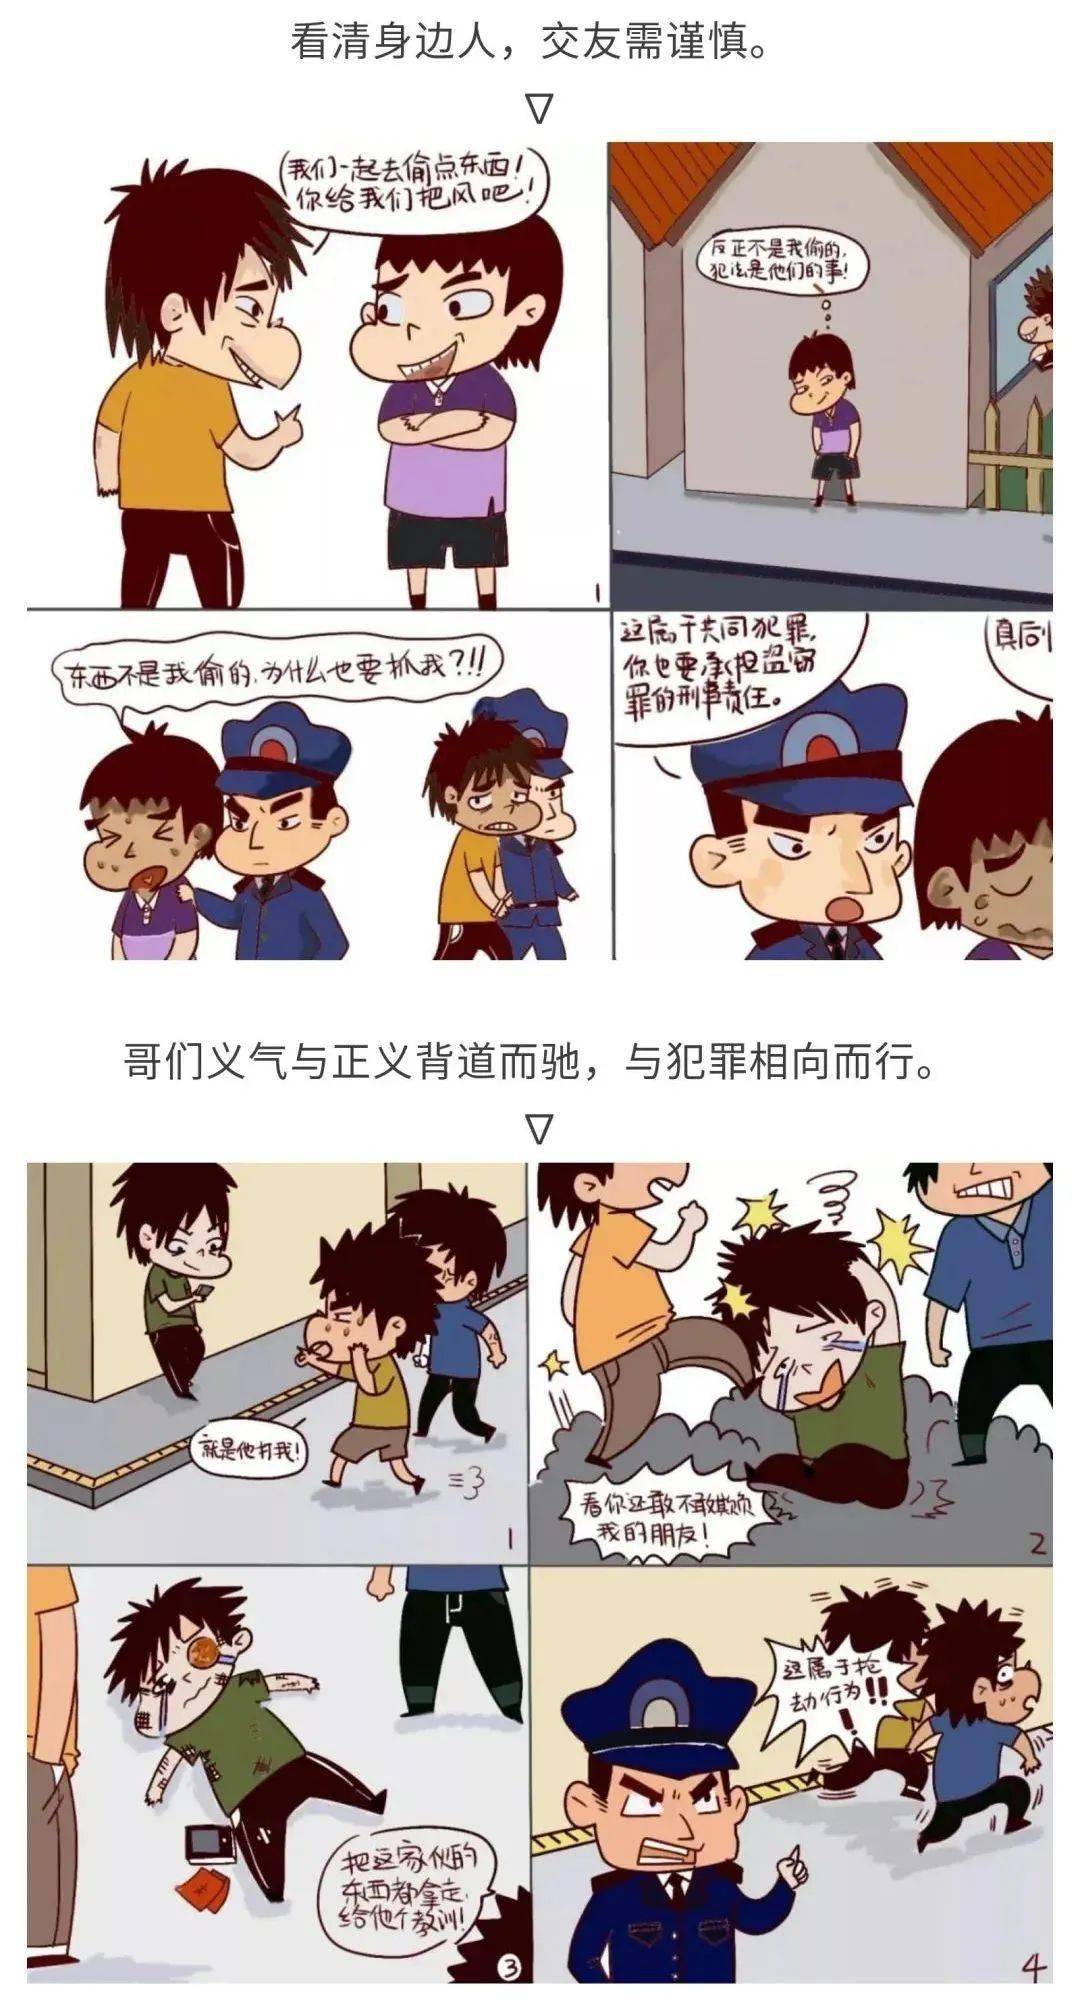 【法治教育】预防未成年人犯罪——漫画说法_青少年